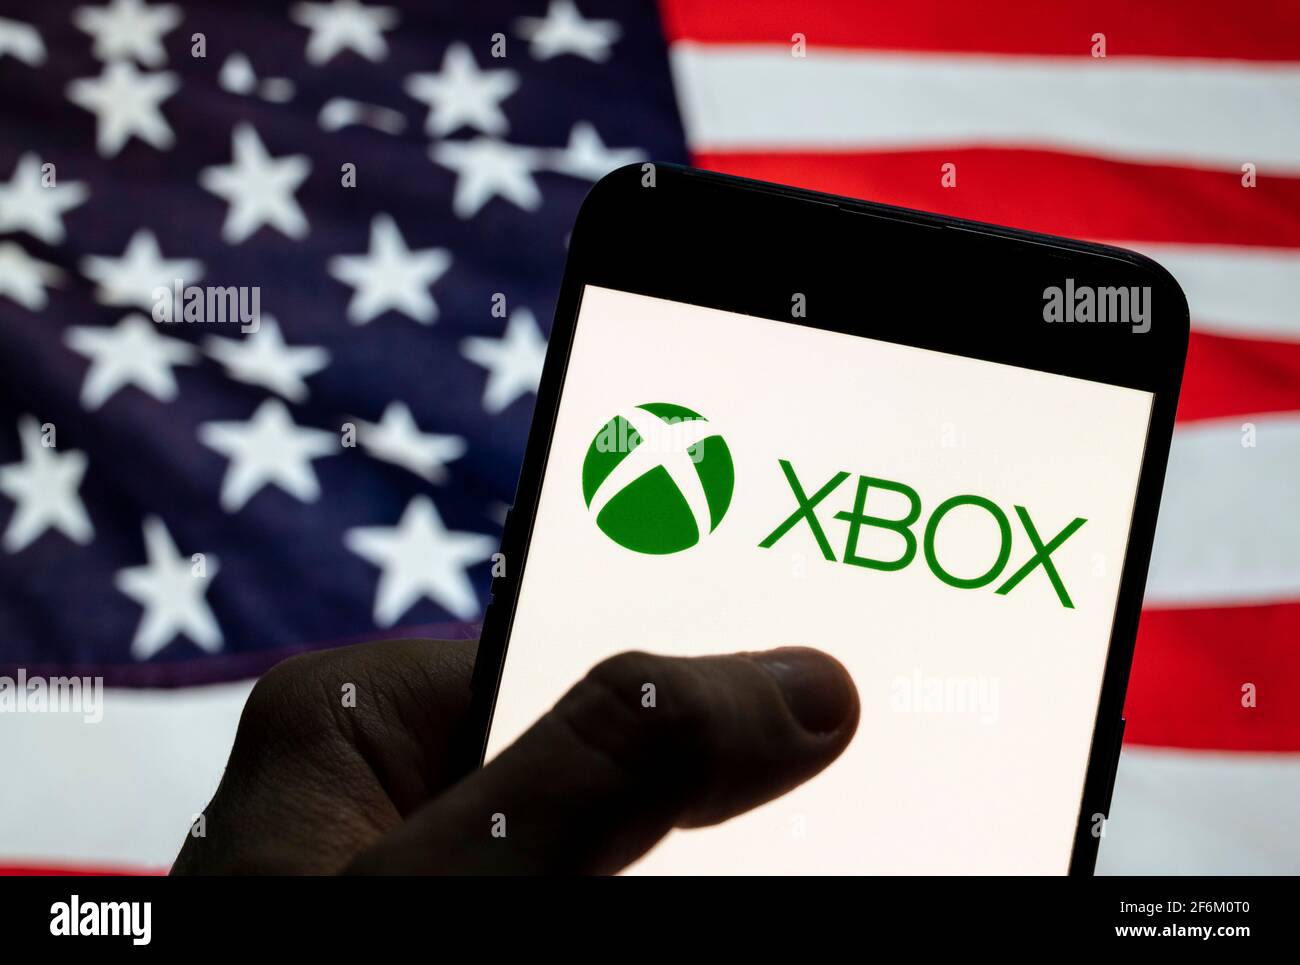 In questa illustrazione fotografica il marchio di videogiochi americano  creato e di proprietà di Microsoft, il logo Xbox, è visto su un dispositivo  mobile Android con Stati Uniti d'America (USA), comunemente noto